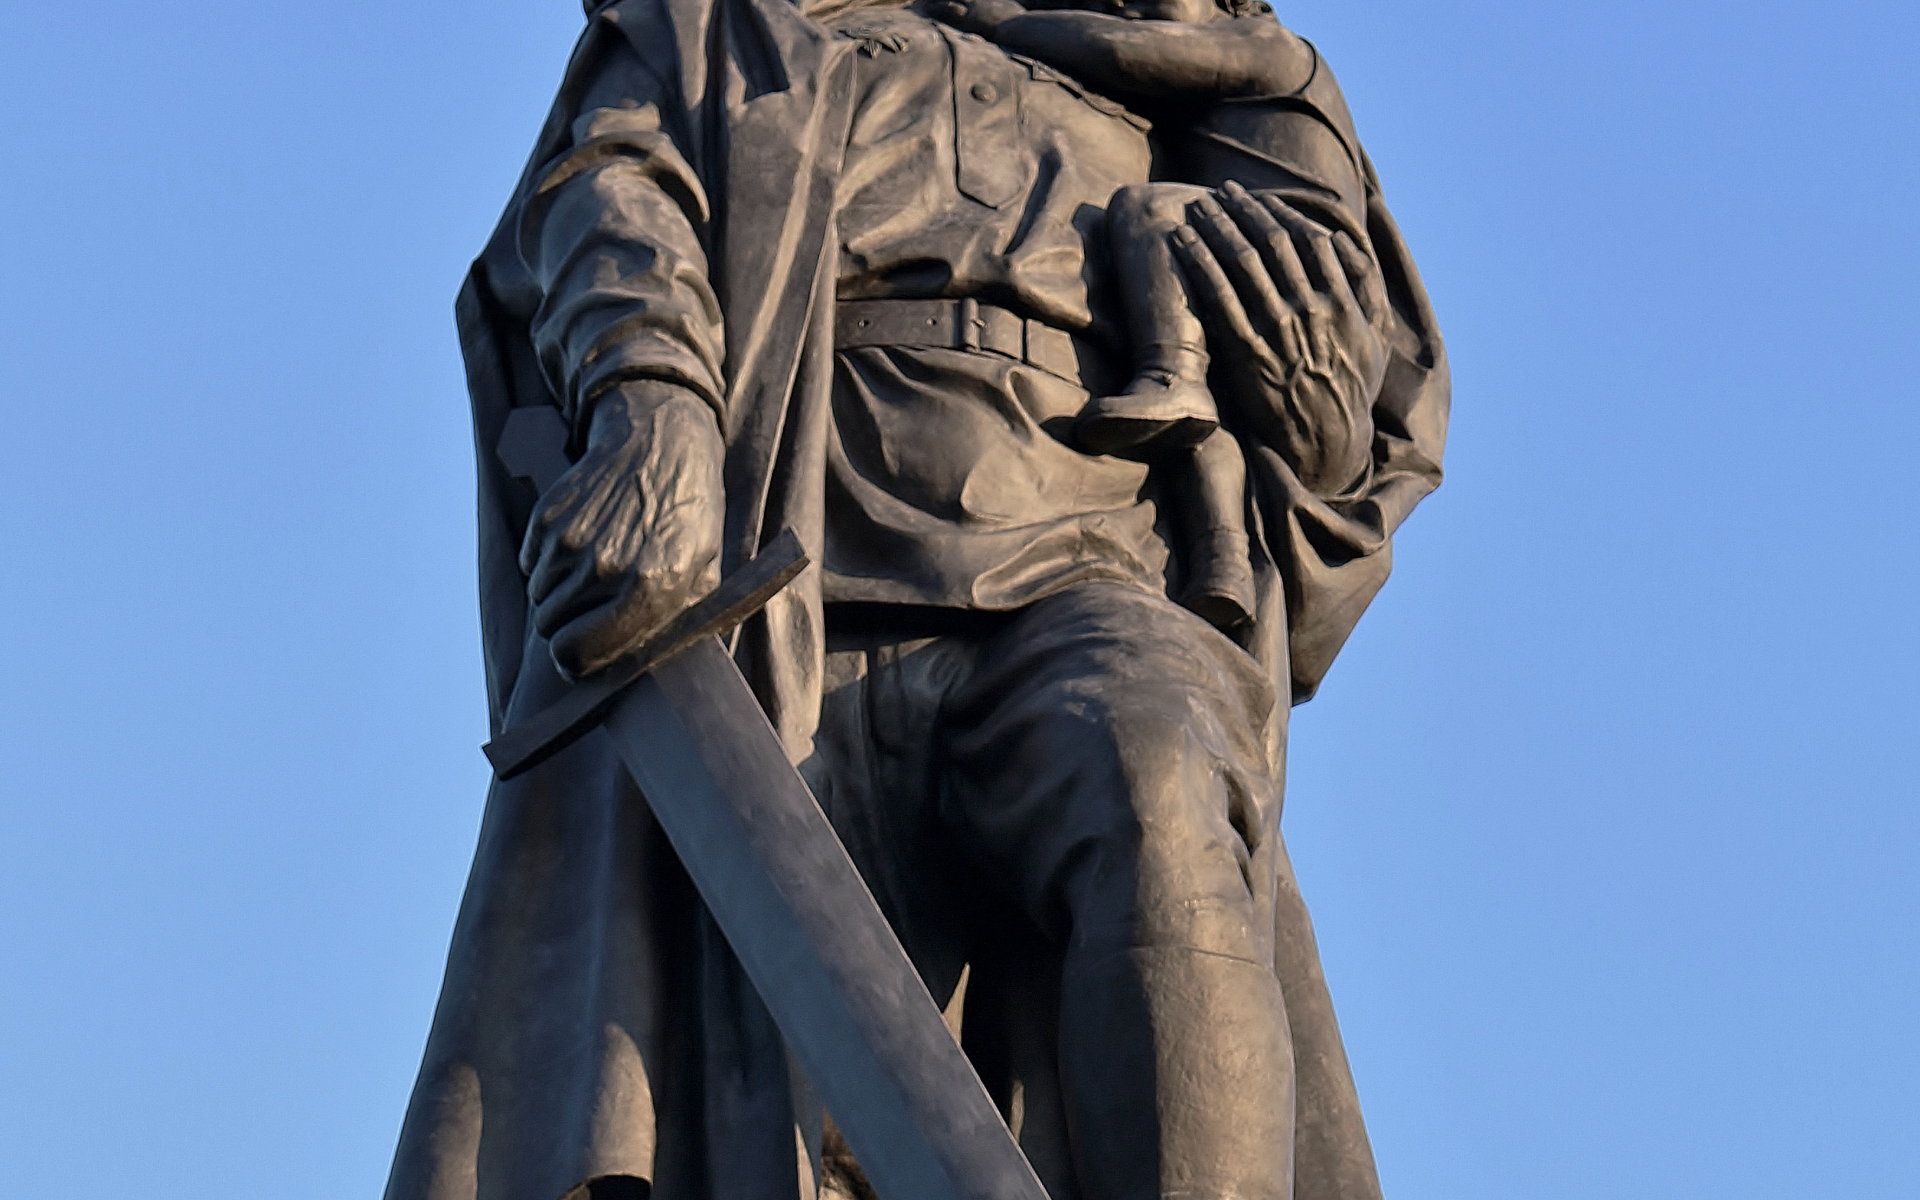 Памятник советскому воину освободителю в трептов парке